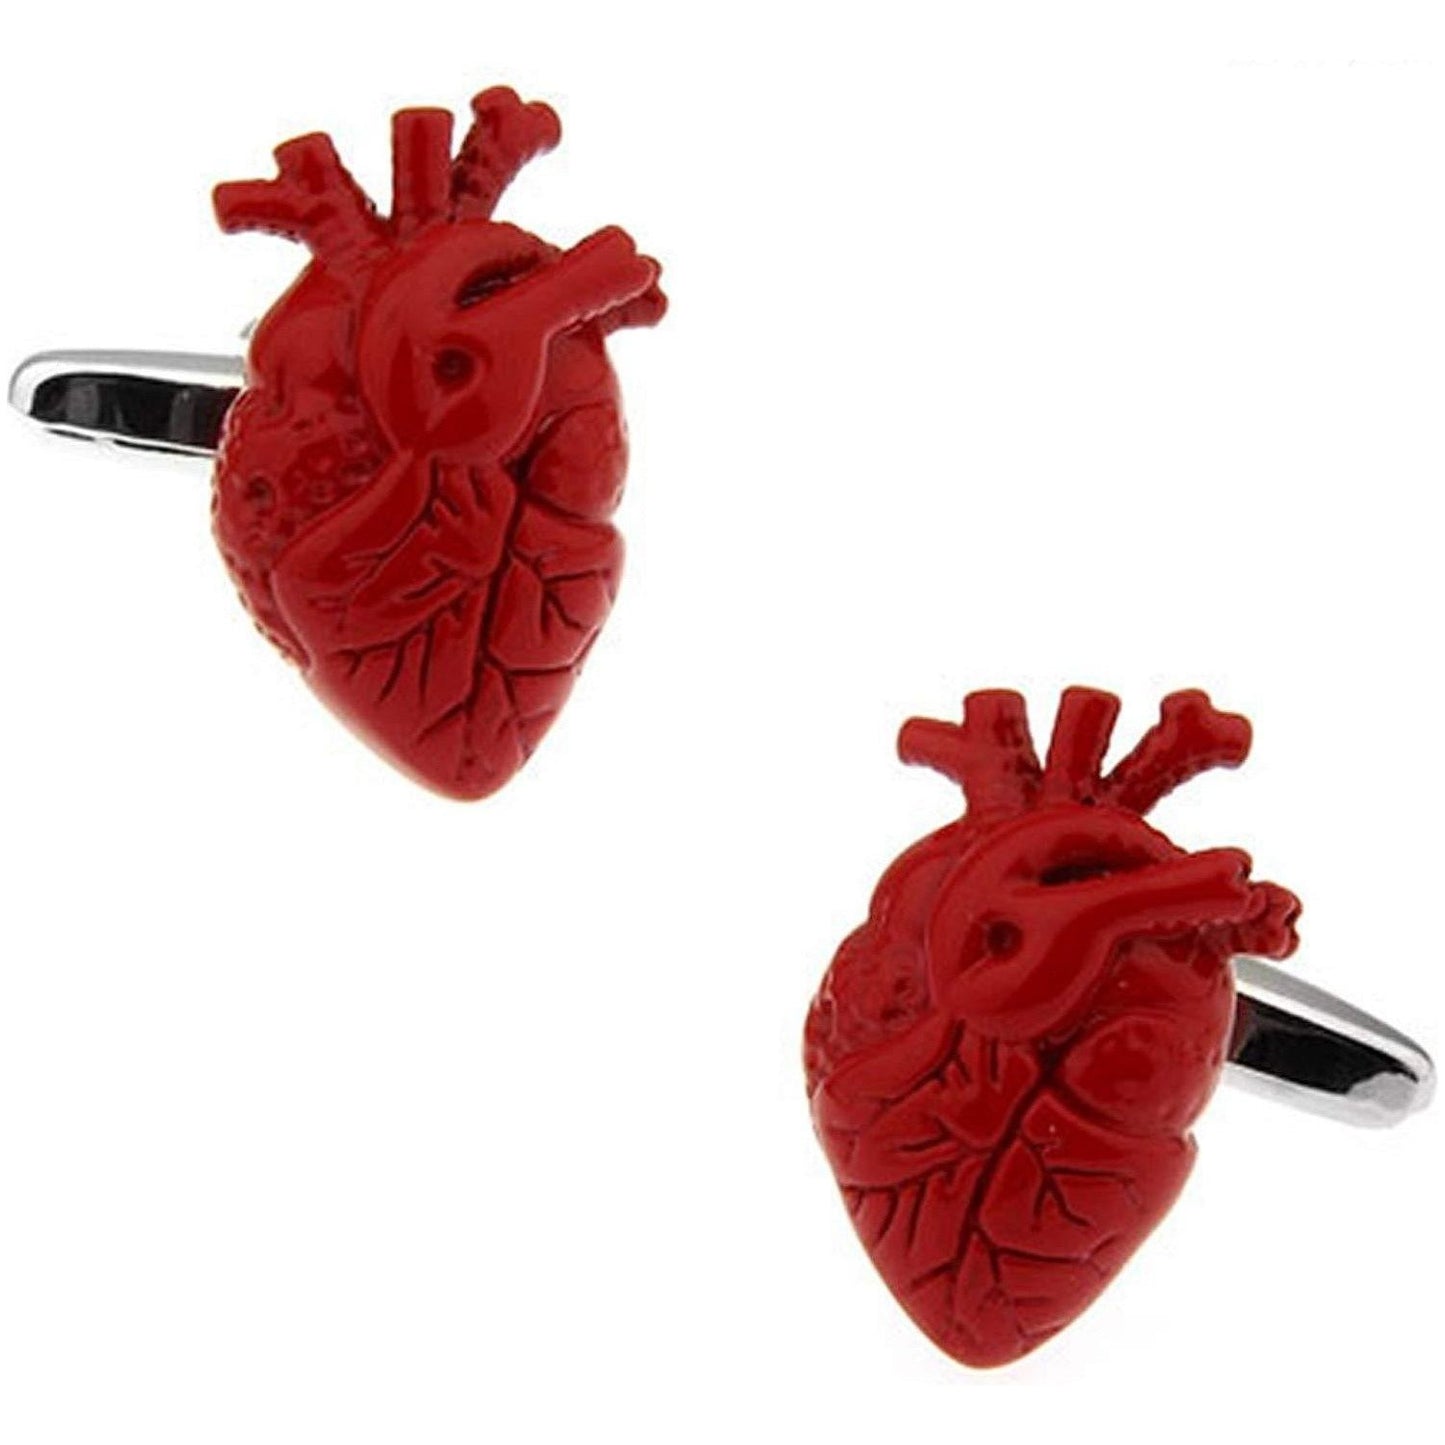 Anatomical Human Heart Cufflinks - Ashton and Finch